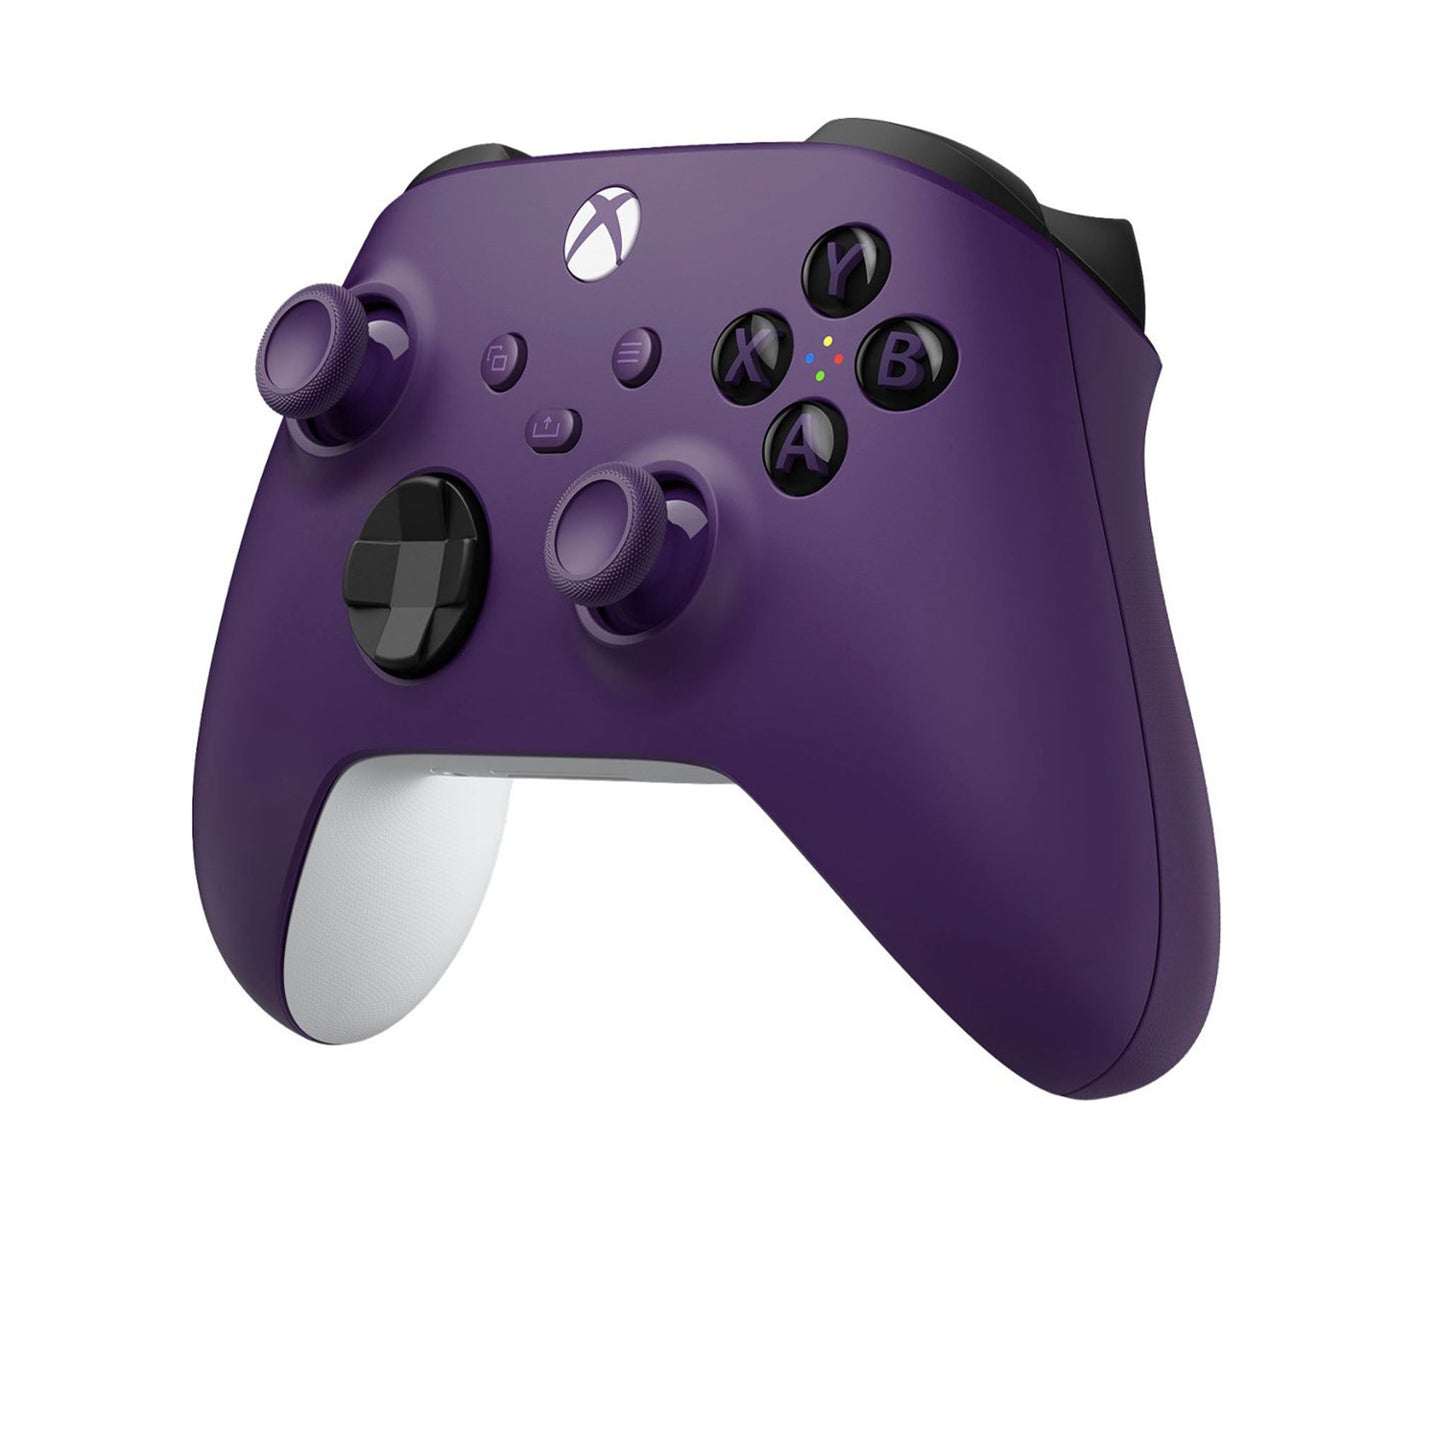 مايكروسوفت - وحدة تحكم Xbox اللاسلكية لأجهزة Xbox Series X وXbox Series S وXbox One وأجهزة Windows - Astral Purple 